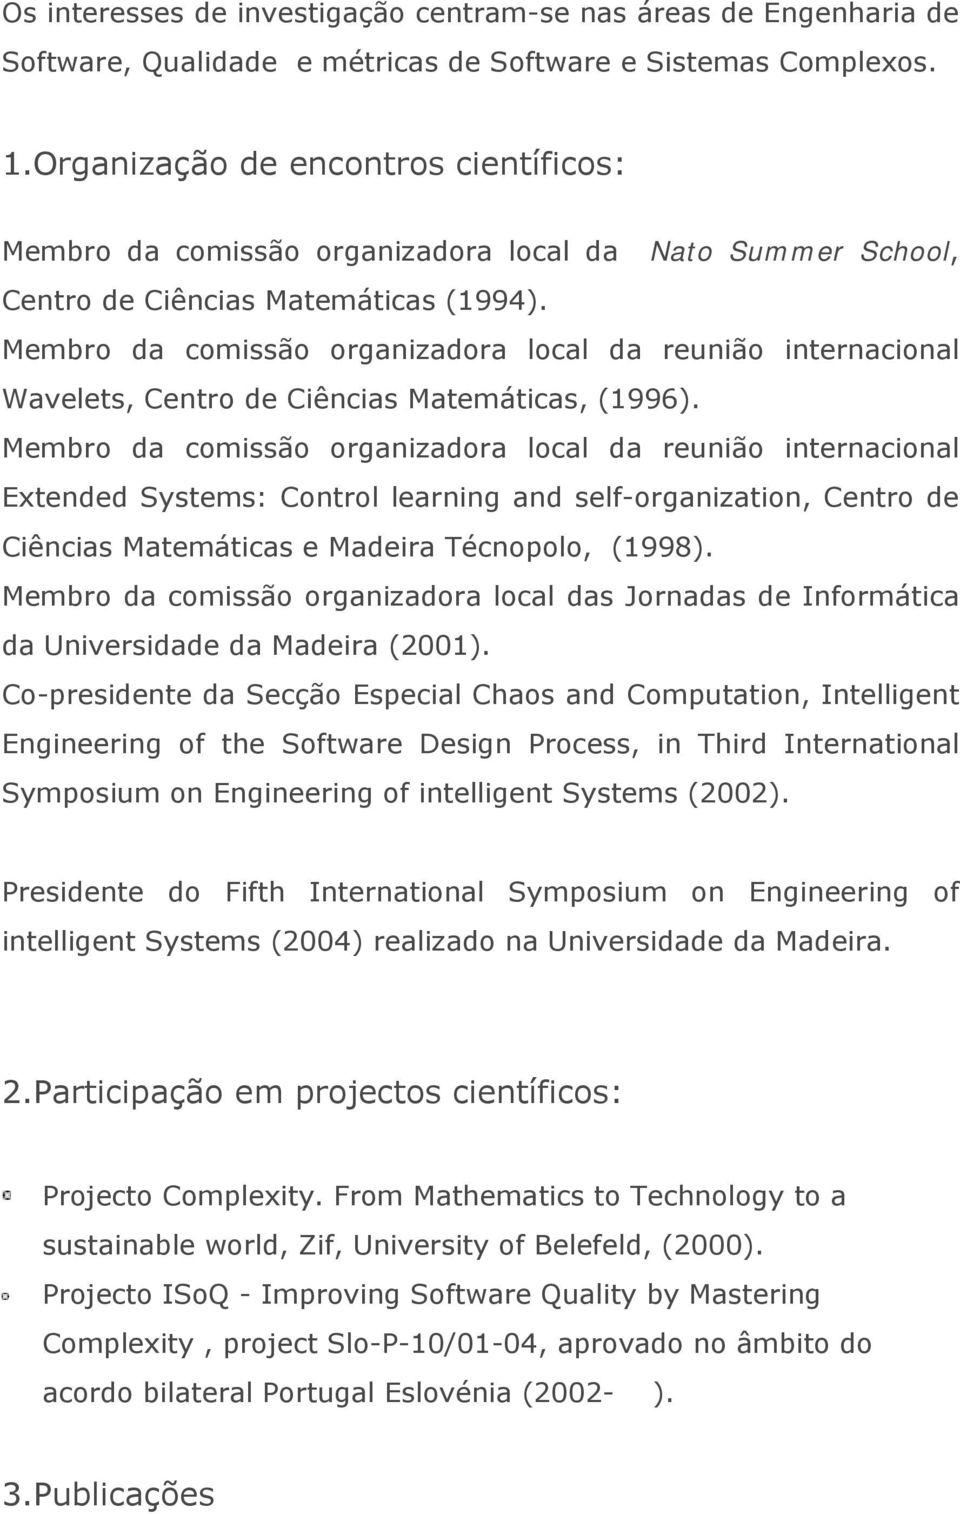 Membro da comissão organizadora local da reunião internacional Wavelets, Centro de Ciências Matemáticas, (1996).